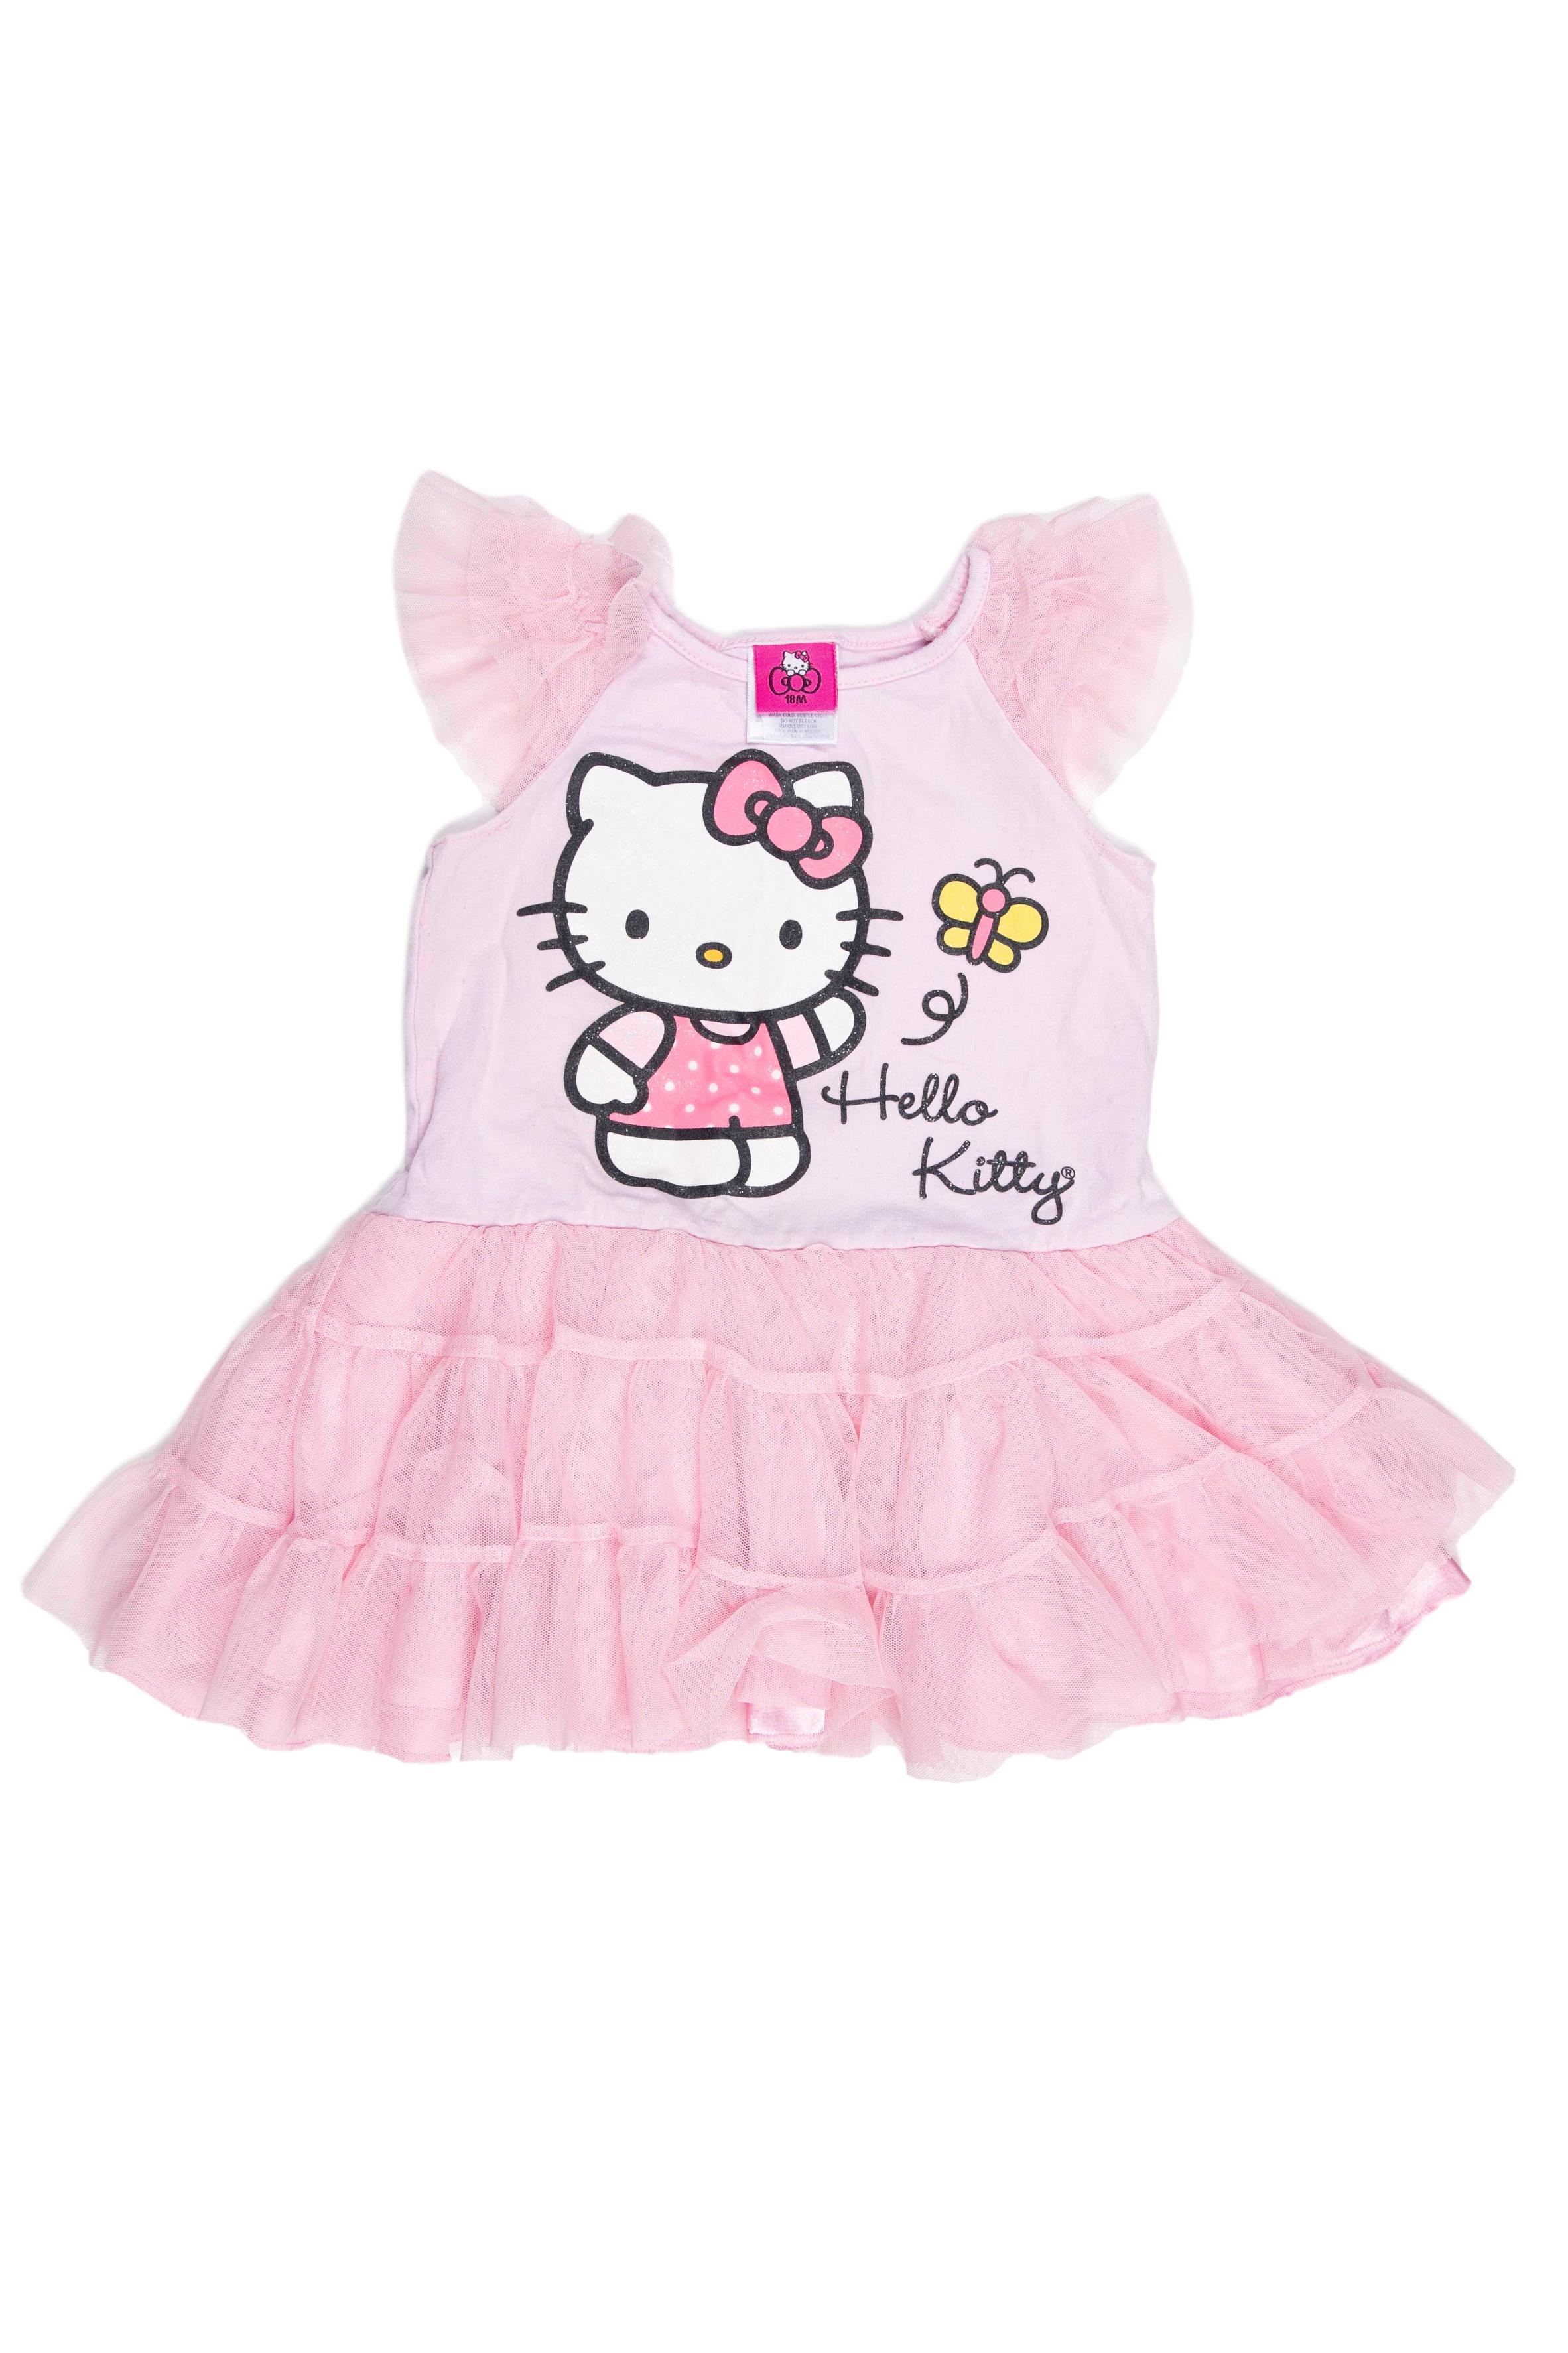 Vestido rosado 97% algodón, 3% spandex con tul. Viene con calzoncitoen en juego. Estado 7/10 depero hacemos una excepción por que sabemos que hará felíz a aluna mini - fan de Hello Kitty. - Hello Kitty By Sanrio